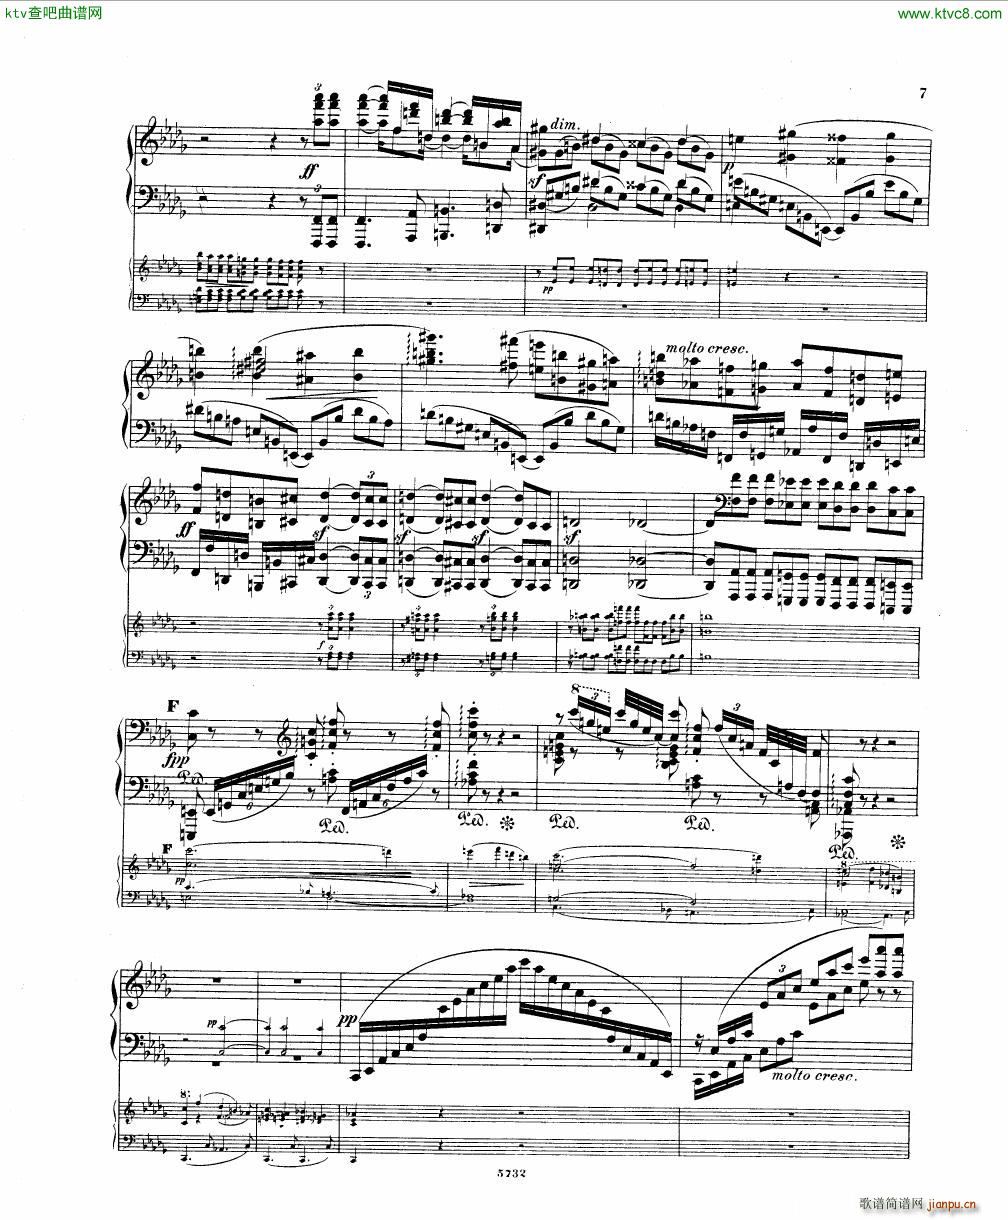 Fuchs Piano concerto Op 27 I()5